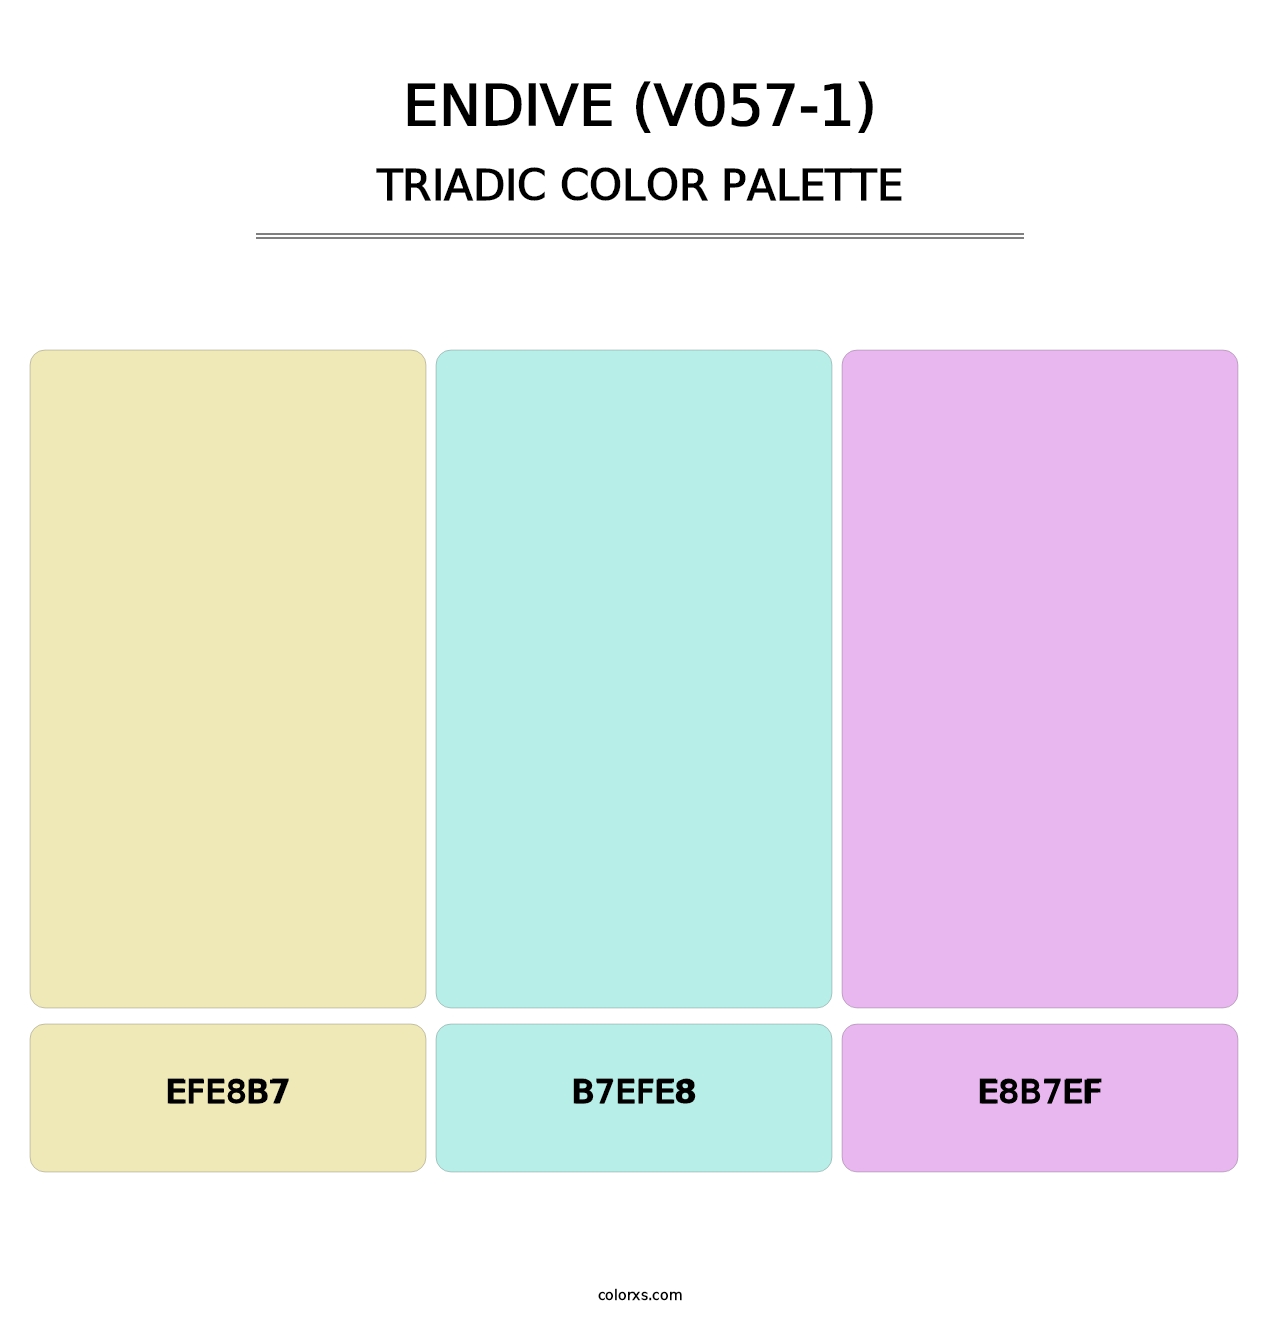 Endive (V057-1) - Triadic Color Palette